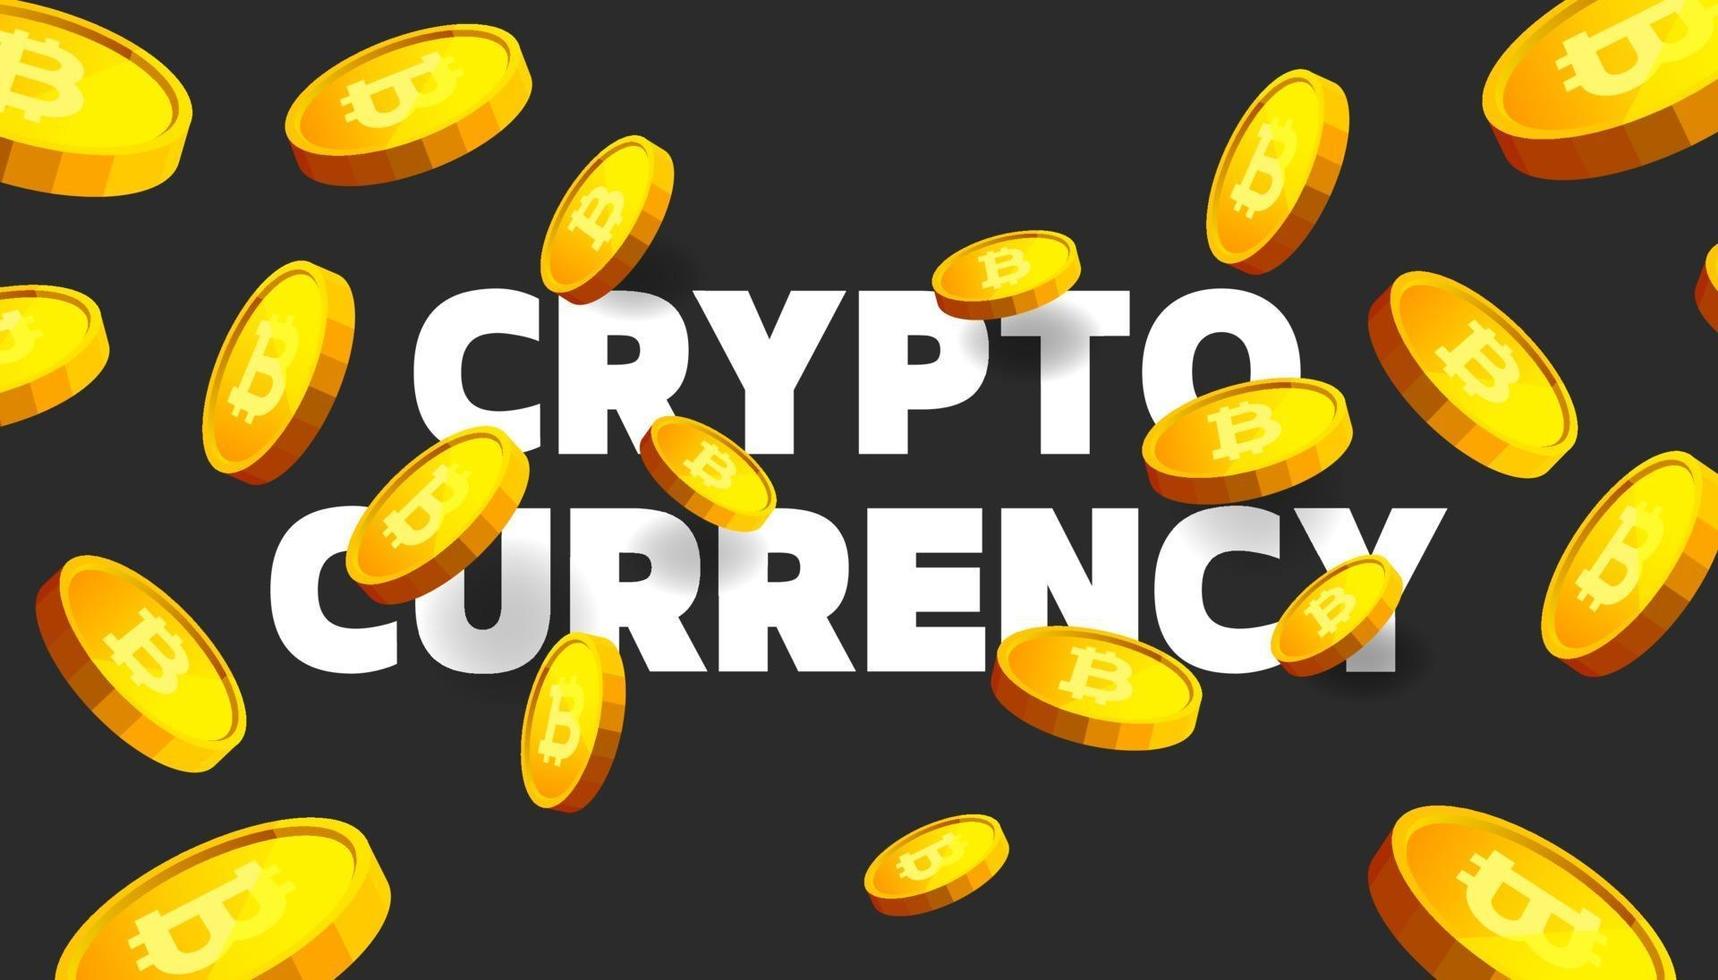 banner bitcoin btc. fundo de banner do conceito de criptomoeda bitcoin. vetor